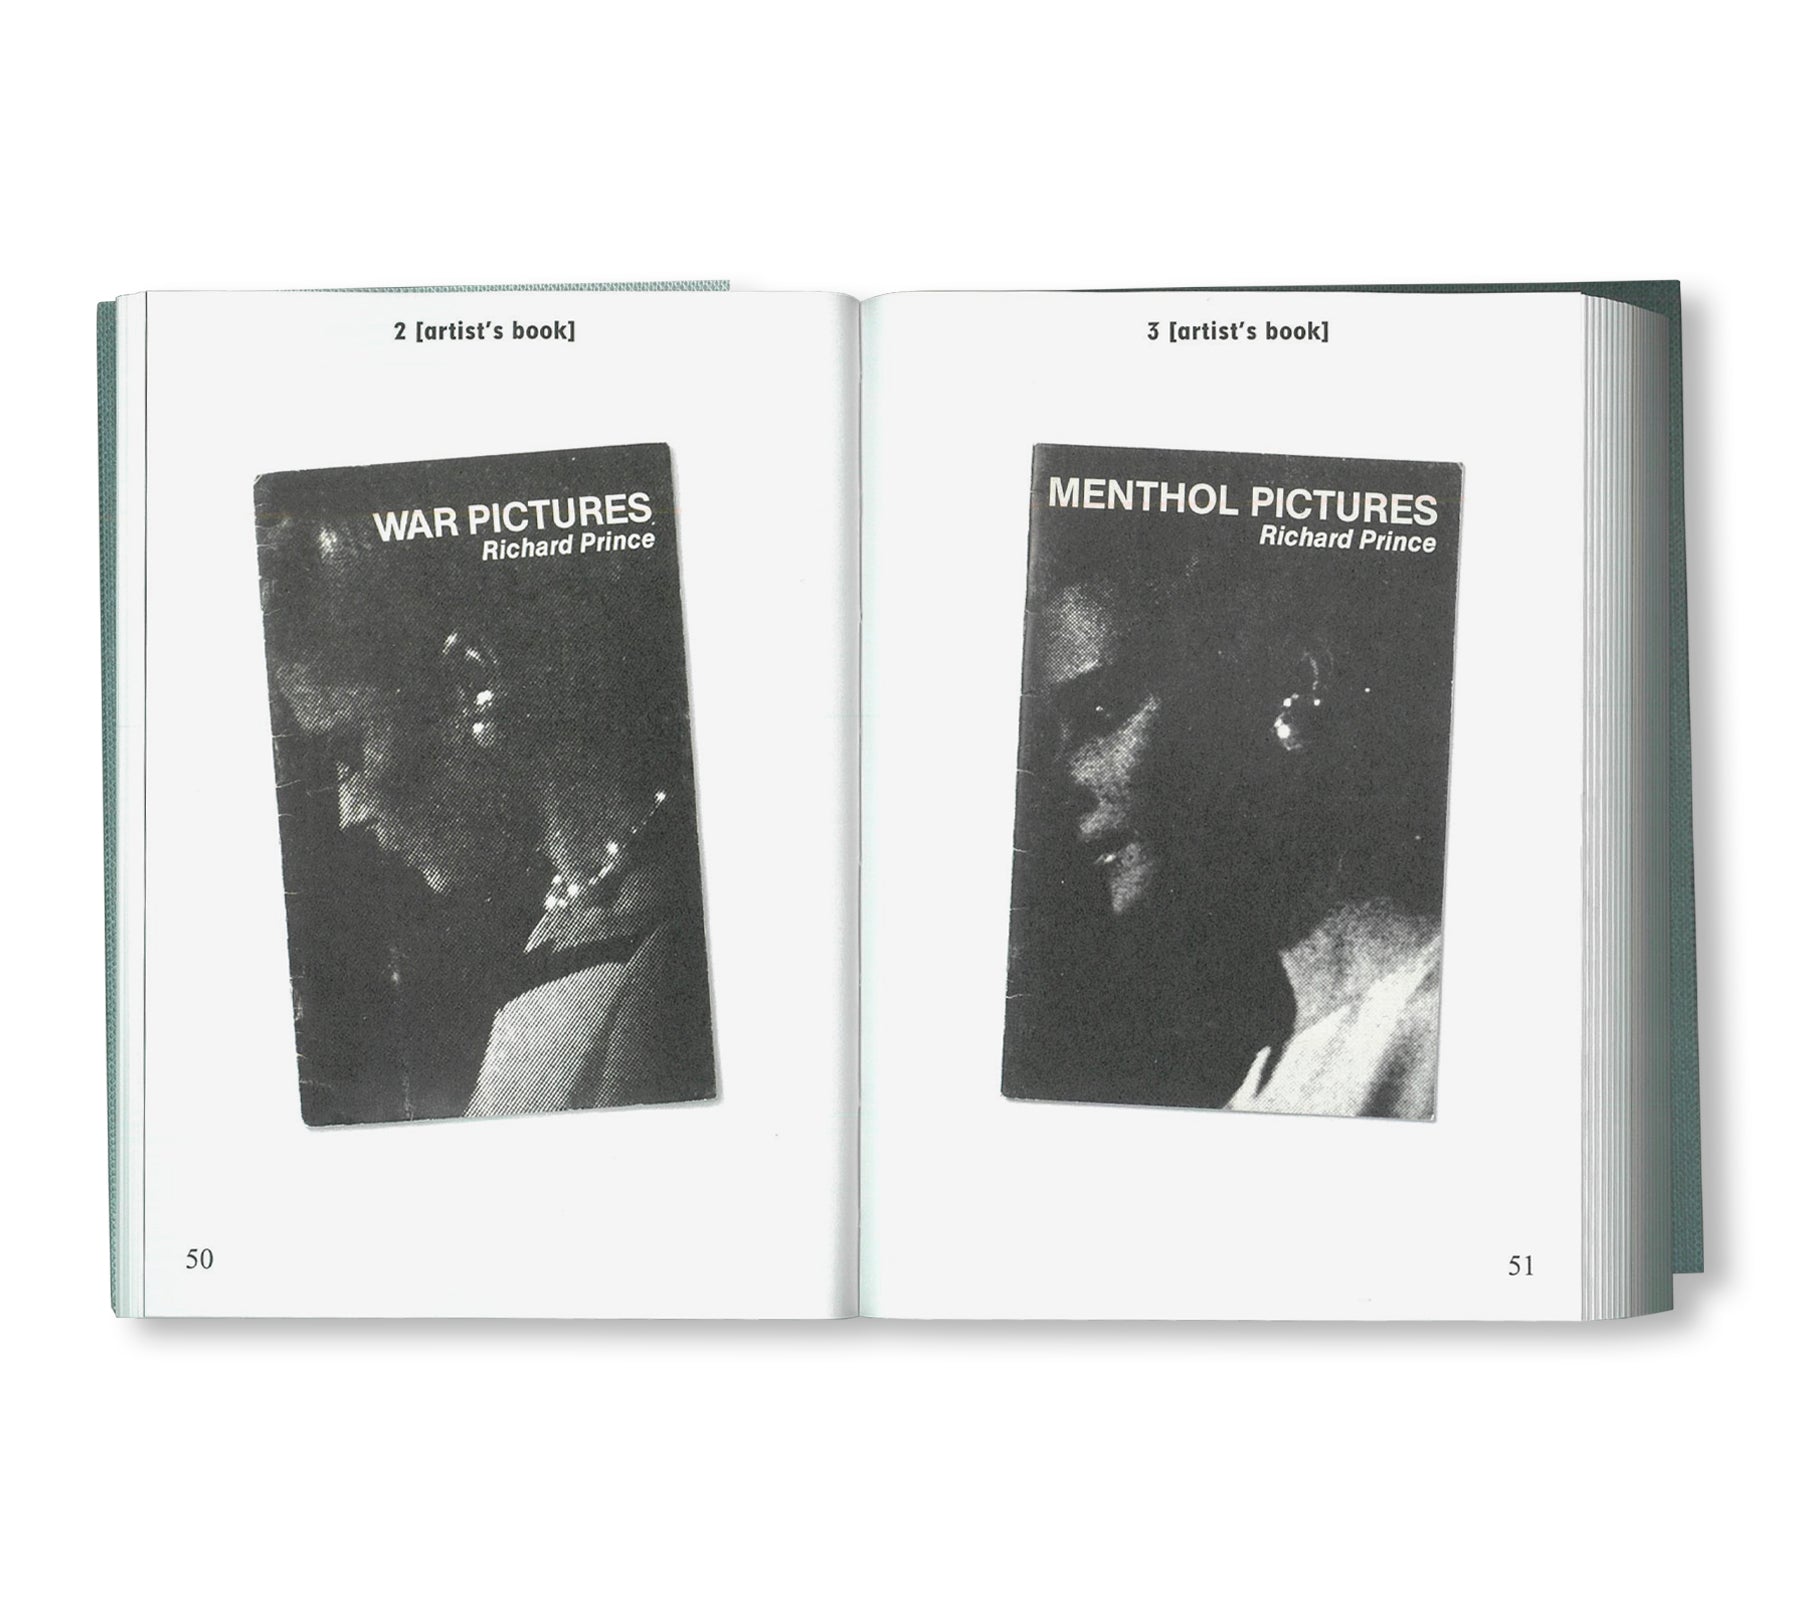 BIBLIOTHÈQUE D’UN AMATEUR. RICHARD PRINCE’S PUBLICATIONS 1980–2020 by Richard Prince